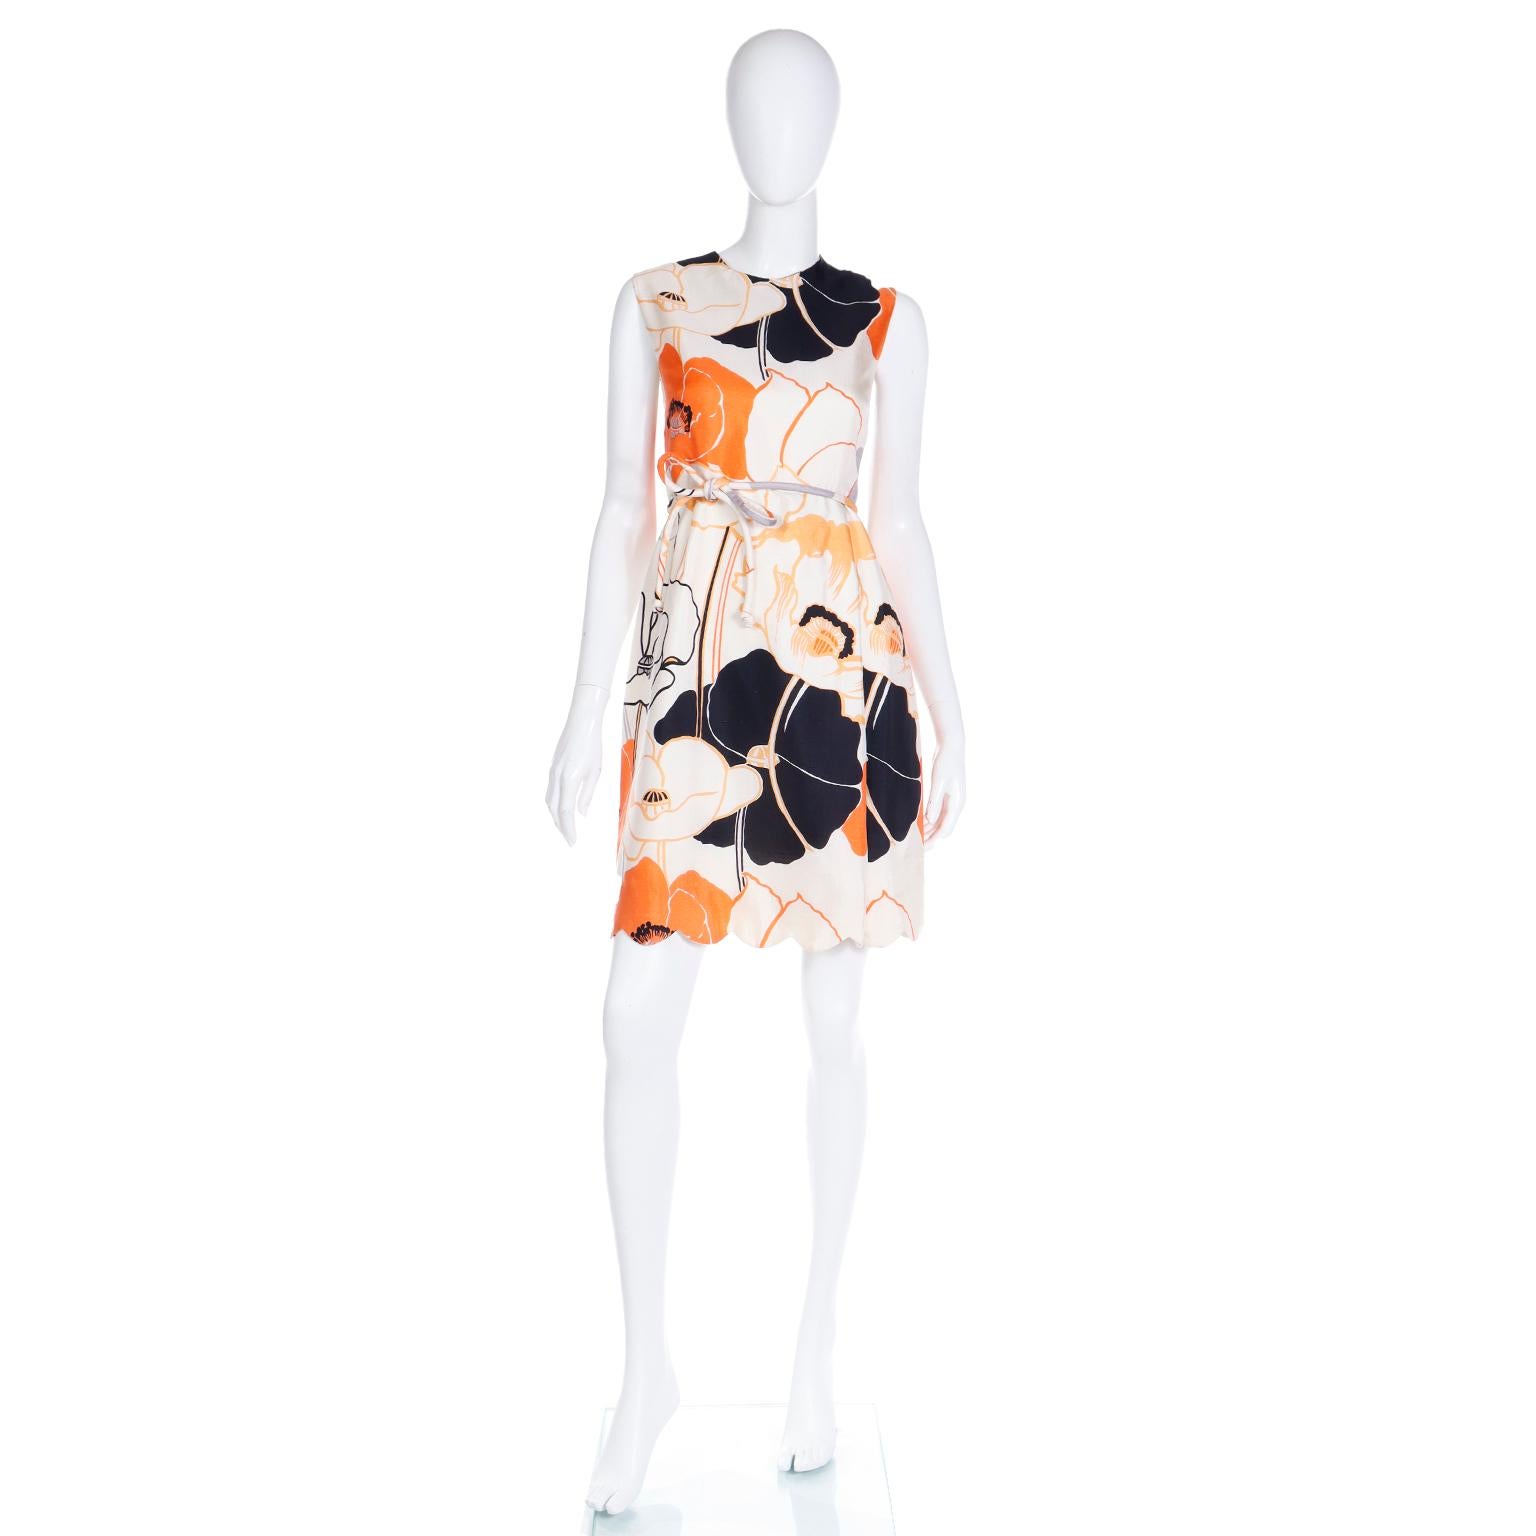 Dieses Vintage-Kleid aus geblümter Seide von Tina Leser Original wurde in den 1960er Jahren entworfen, ist aber immer noch modern genug, um heute getragen zu werden! Dieses gewagte, farbenfrohe Kleid ist vollständig gefüttert und wird mit dem